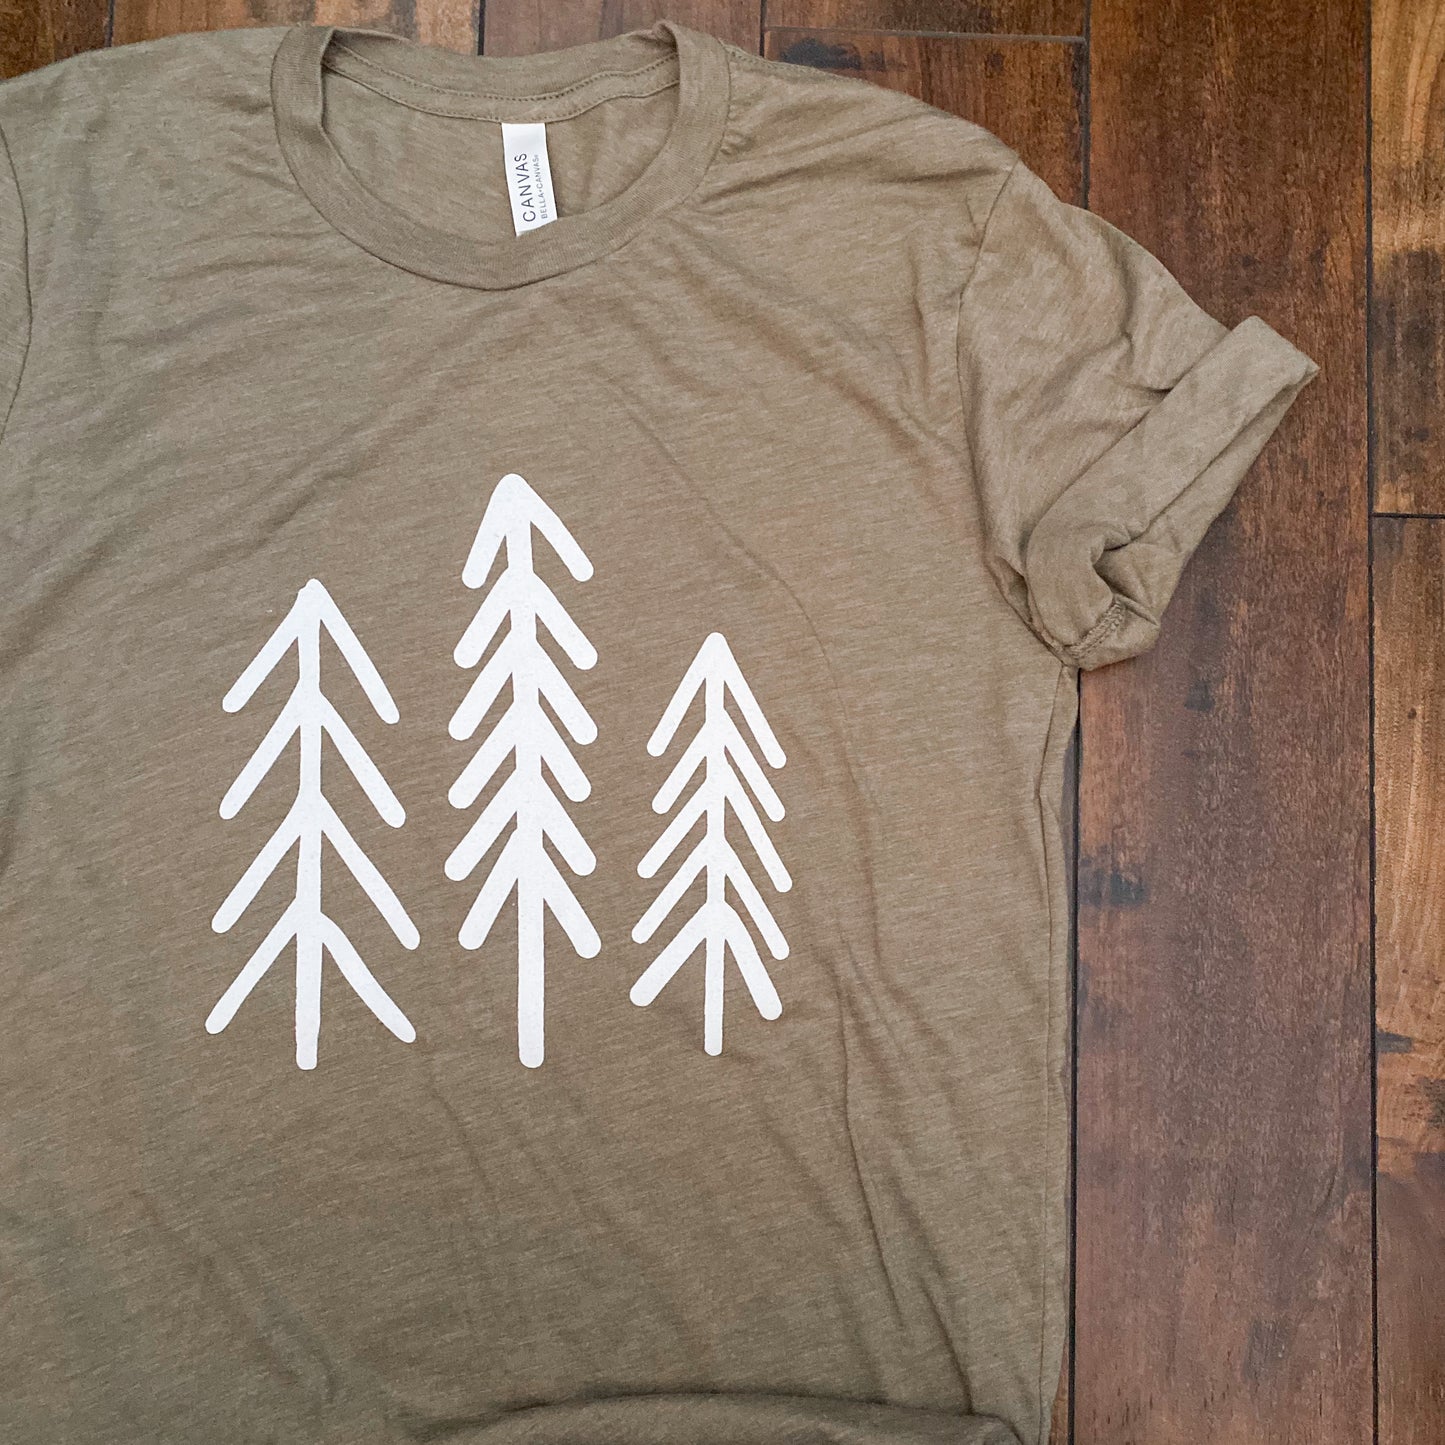 Outdoors Tree T-shirt | Emerald Green T-shirt | Unisex